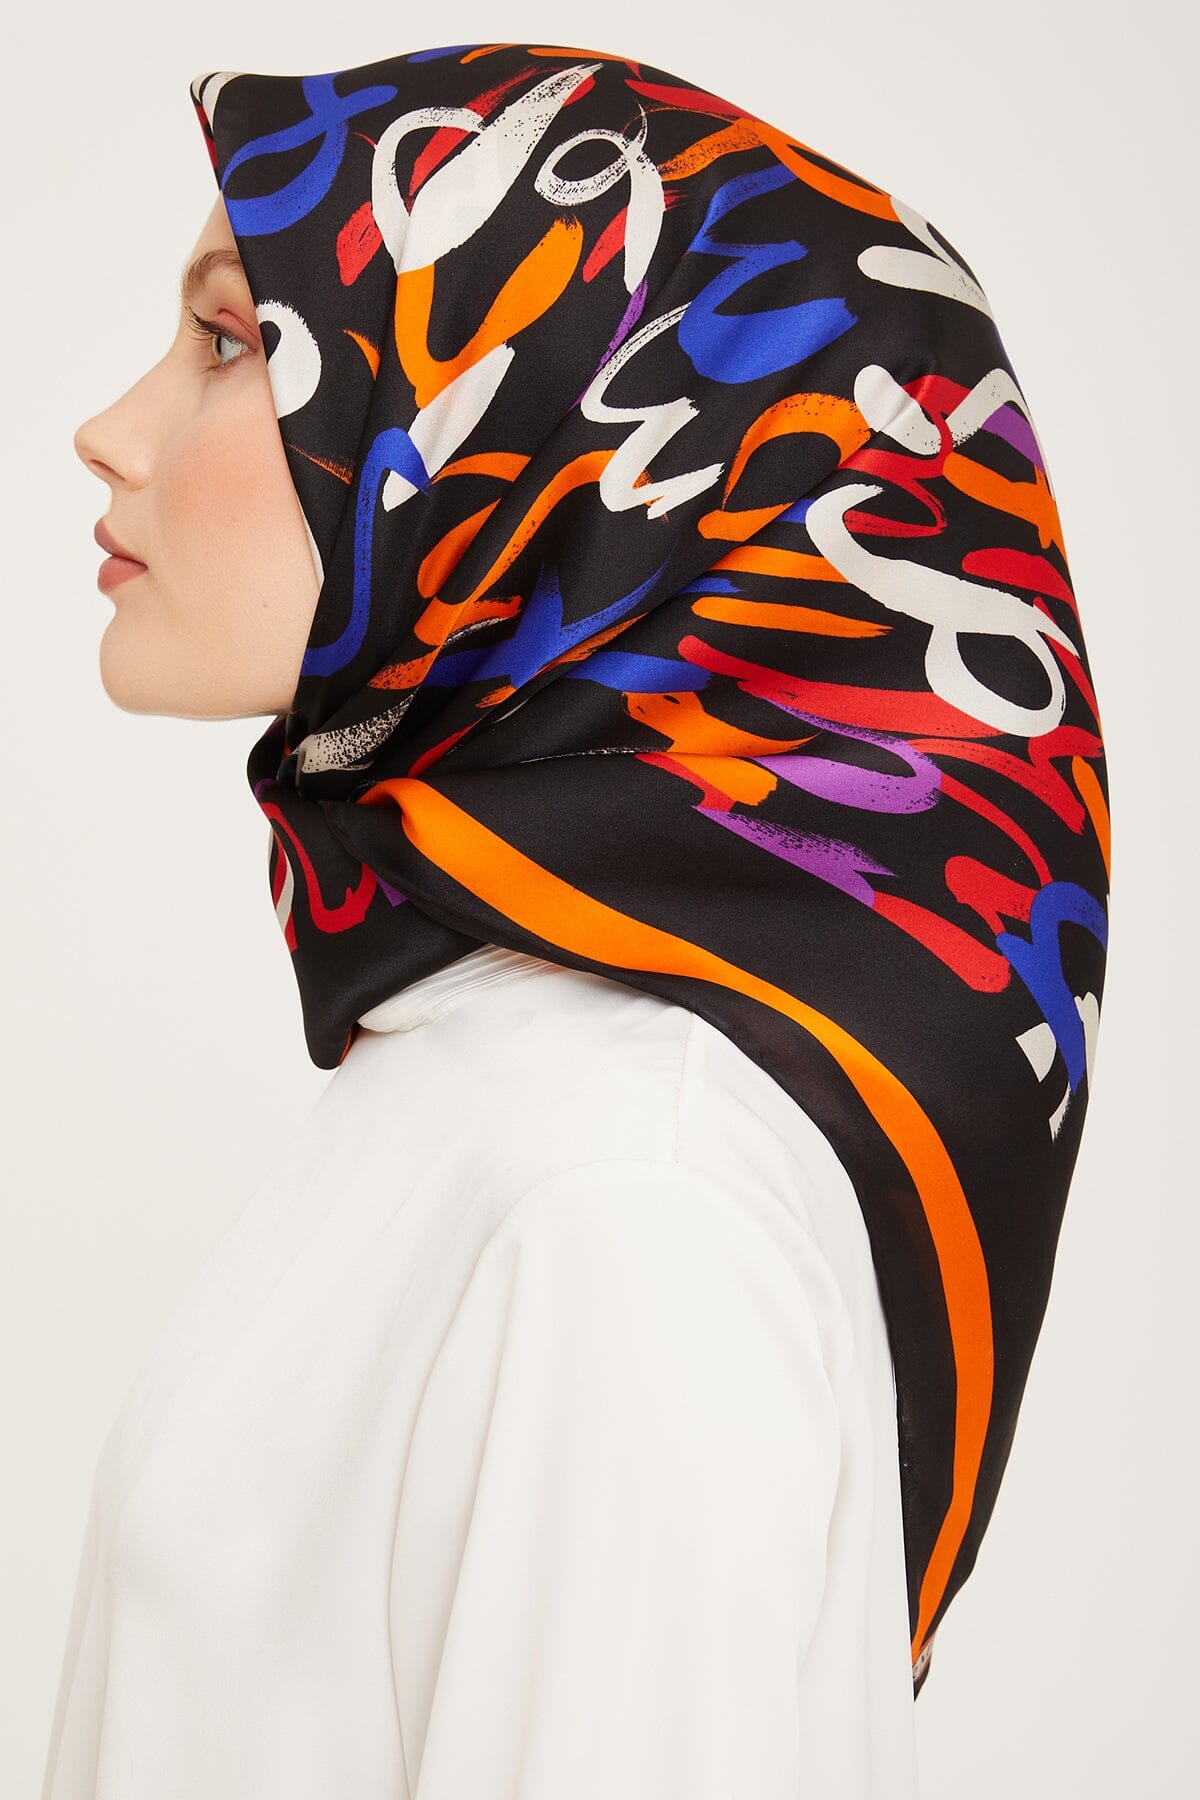 Armine Nudle Designer Silk Scarf #1 Silk Hijabs,Armine Armine 